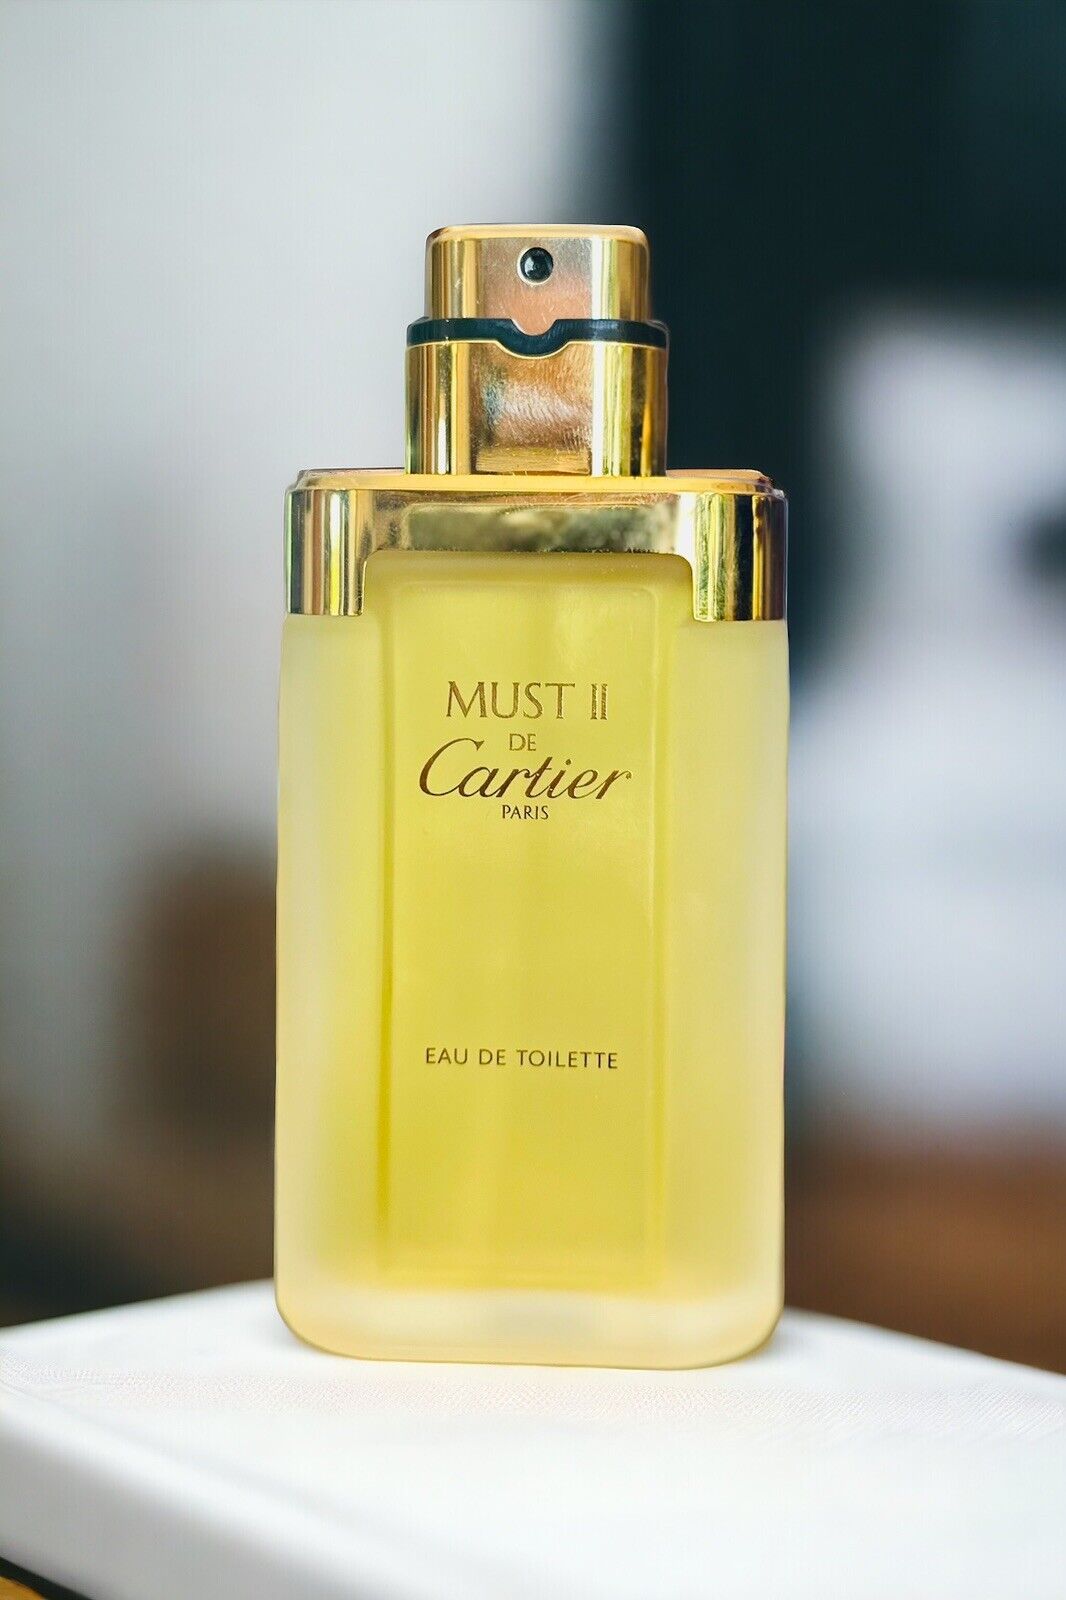 Cartier MUST II 2 DE CARTIER 3.3oz 100ml Eau de Toilette Vintage No Box No Lid